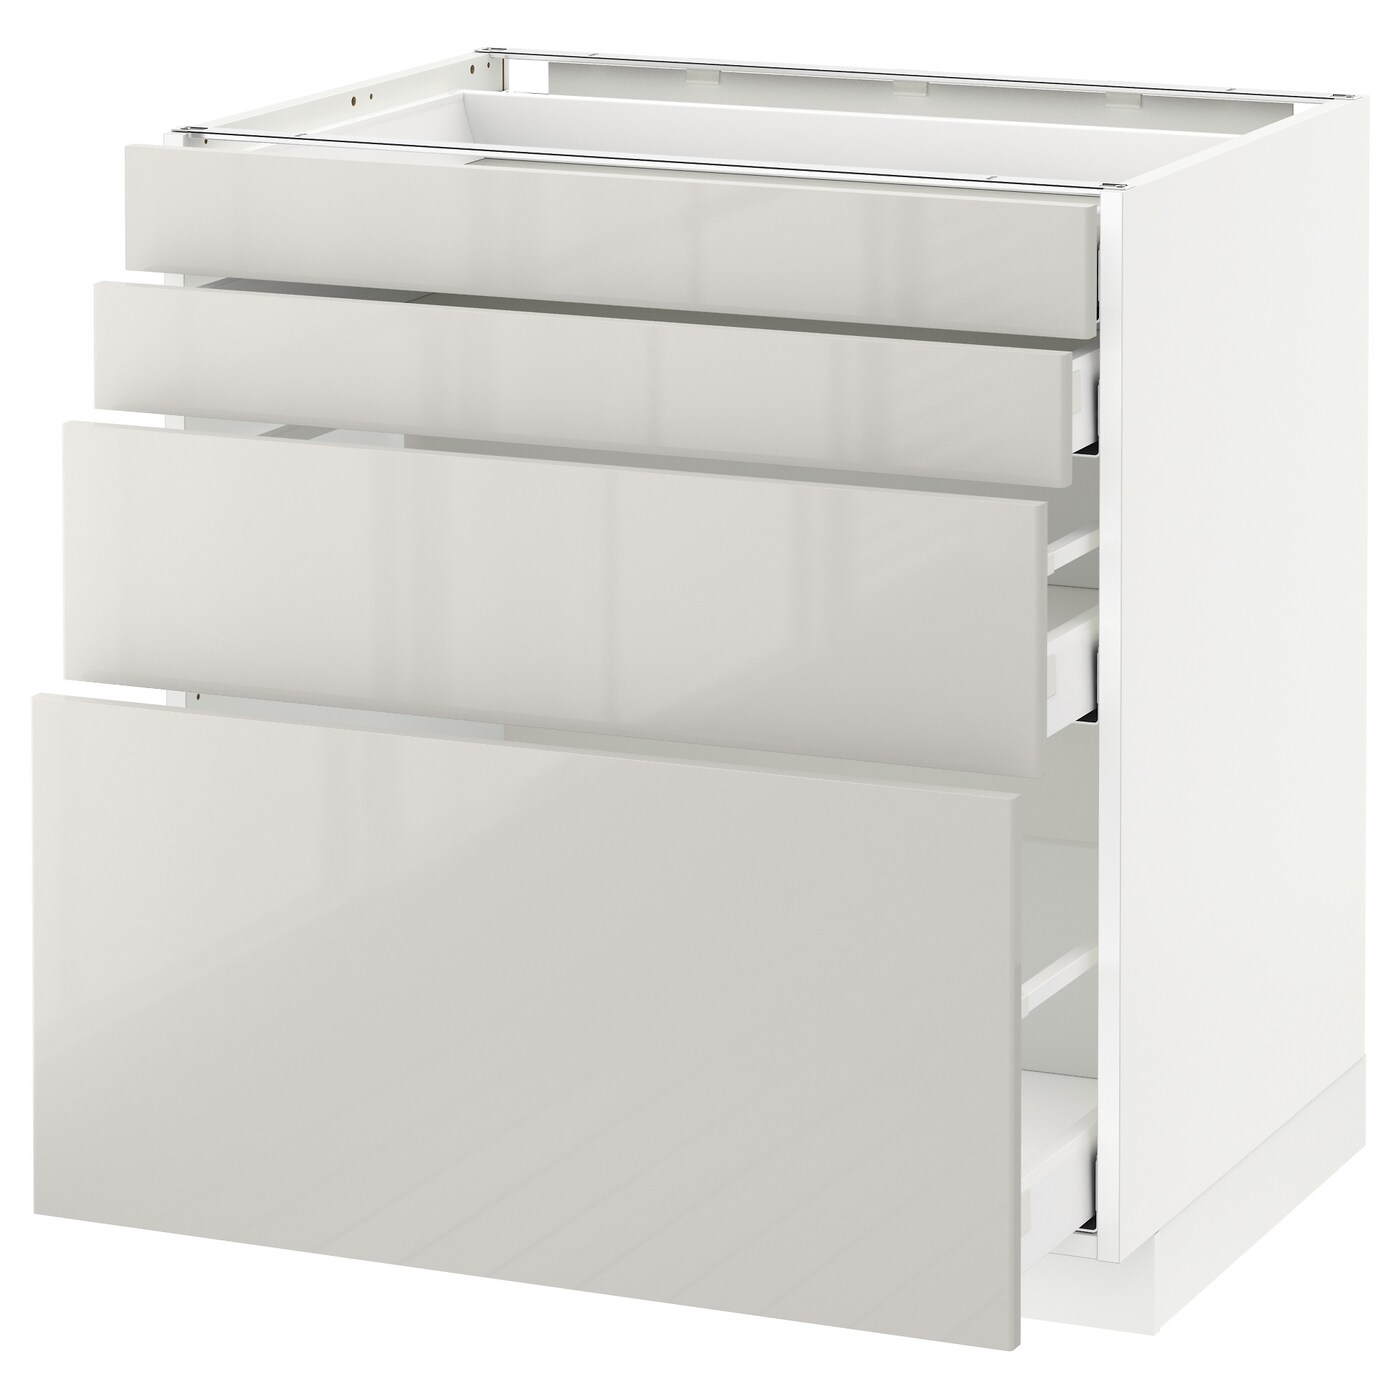 Напольный кухонный шкаф  - IKEA METOD MAXIMERA, 88x61,8x80см, белый/светло-серый, МЕТОД МАКСИМЕРА ИКЕА